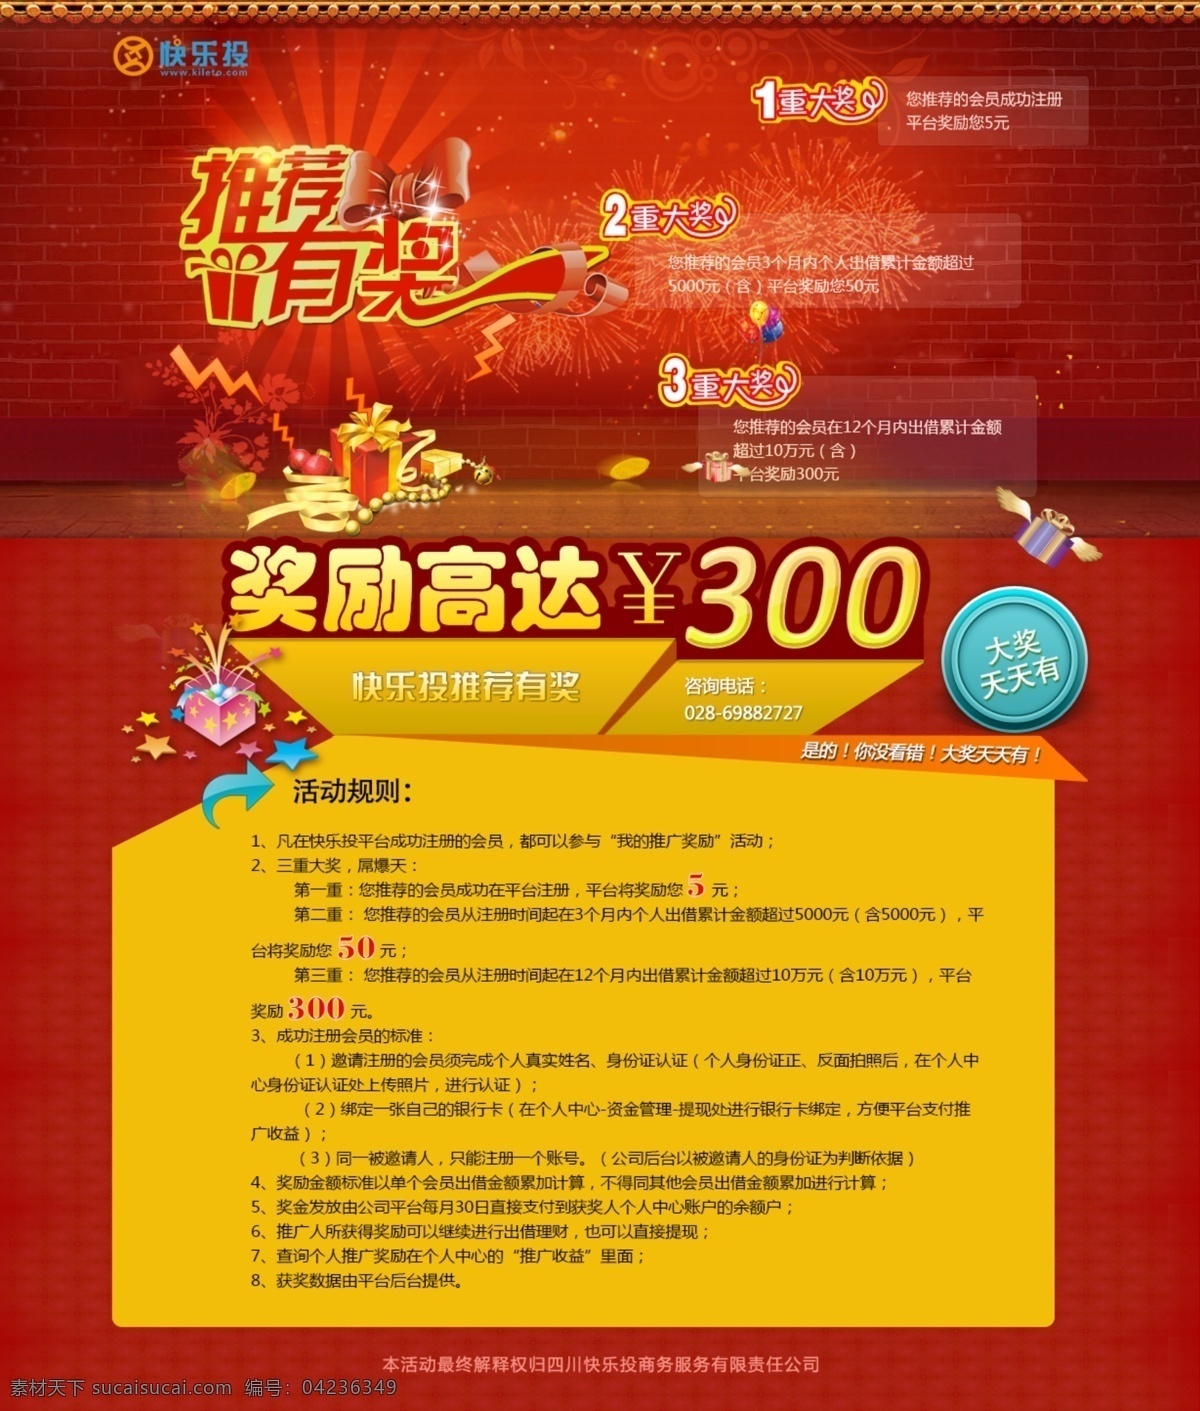 理财活动页面 p2p 投资理财 理财活动 奖励 推荐 大礼 中文模板 网页模板 源文件